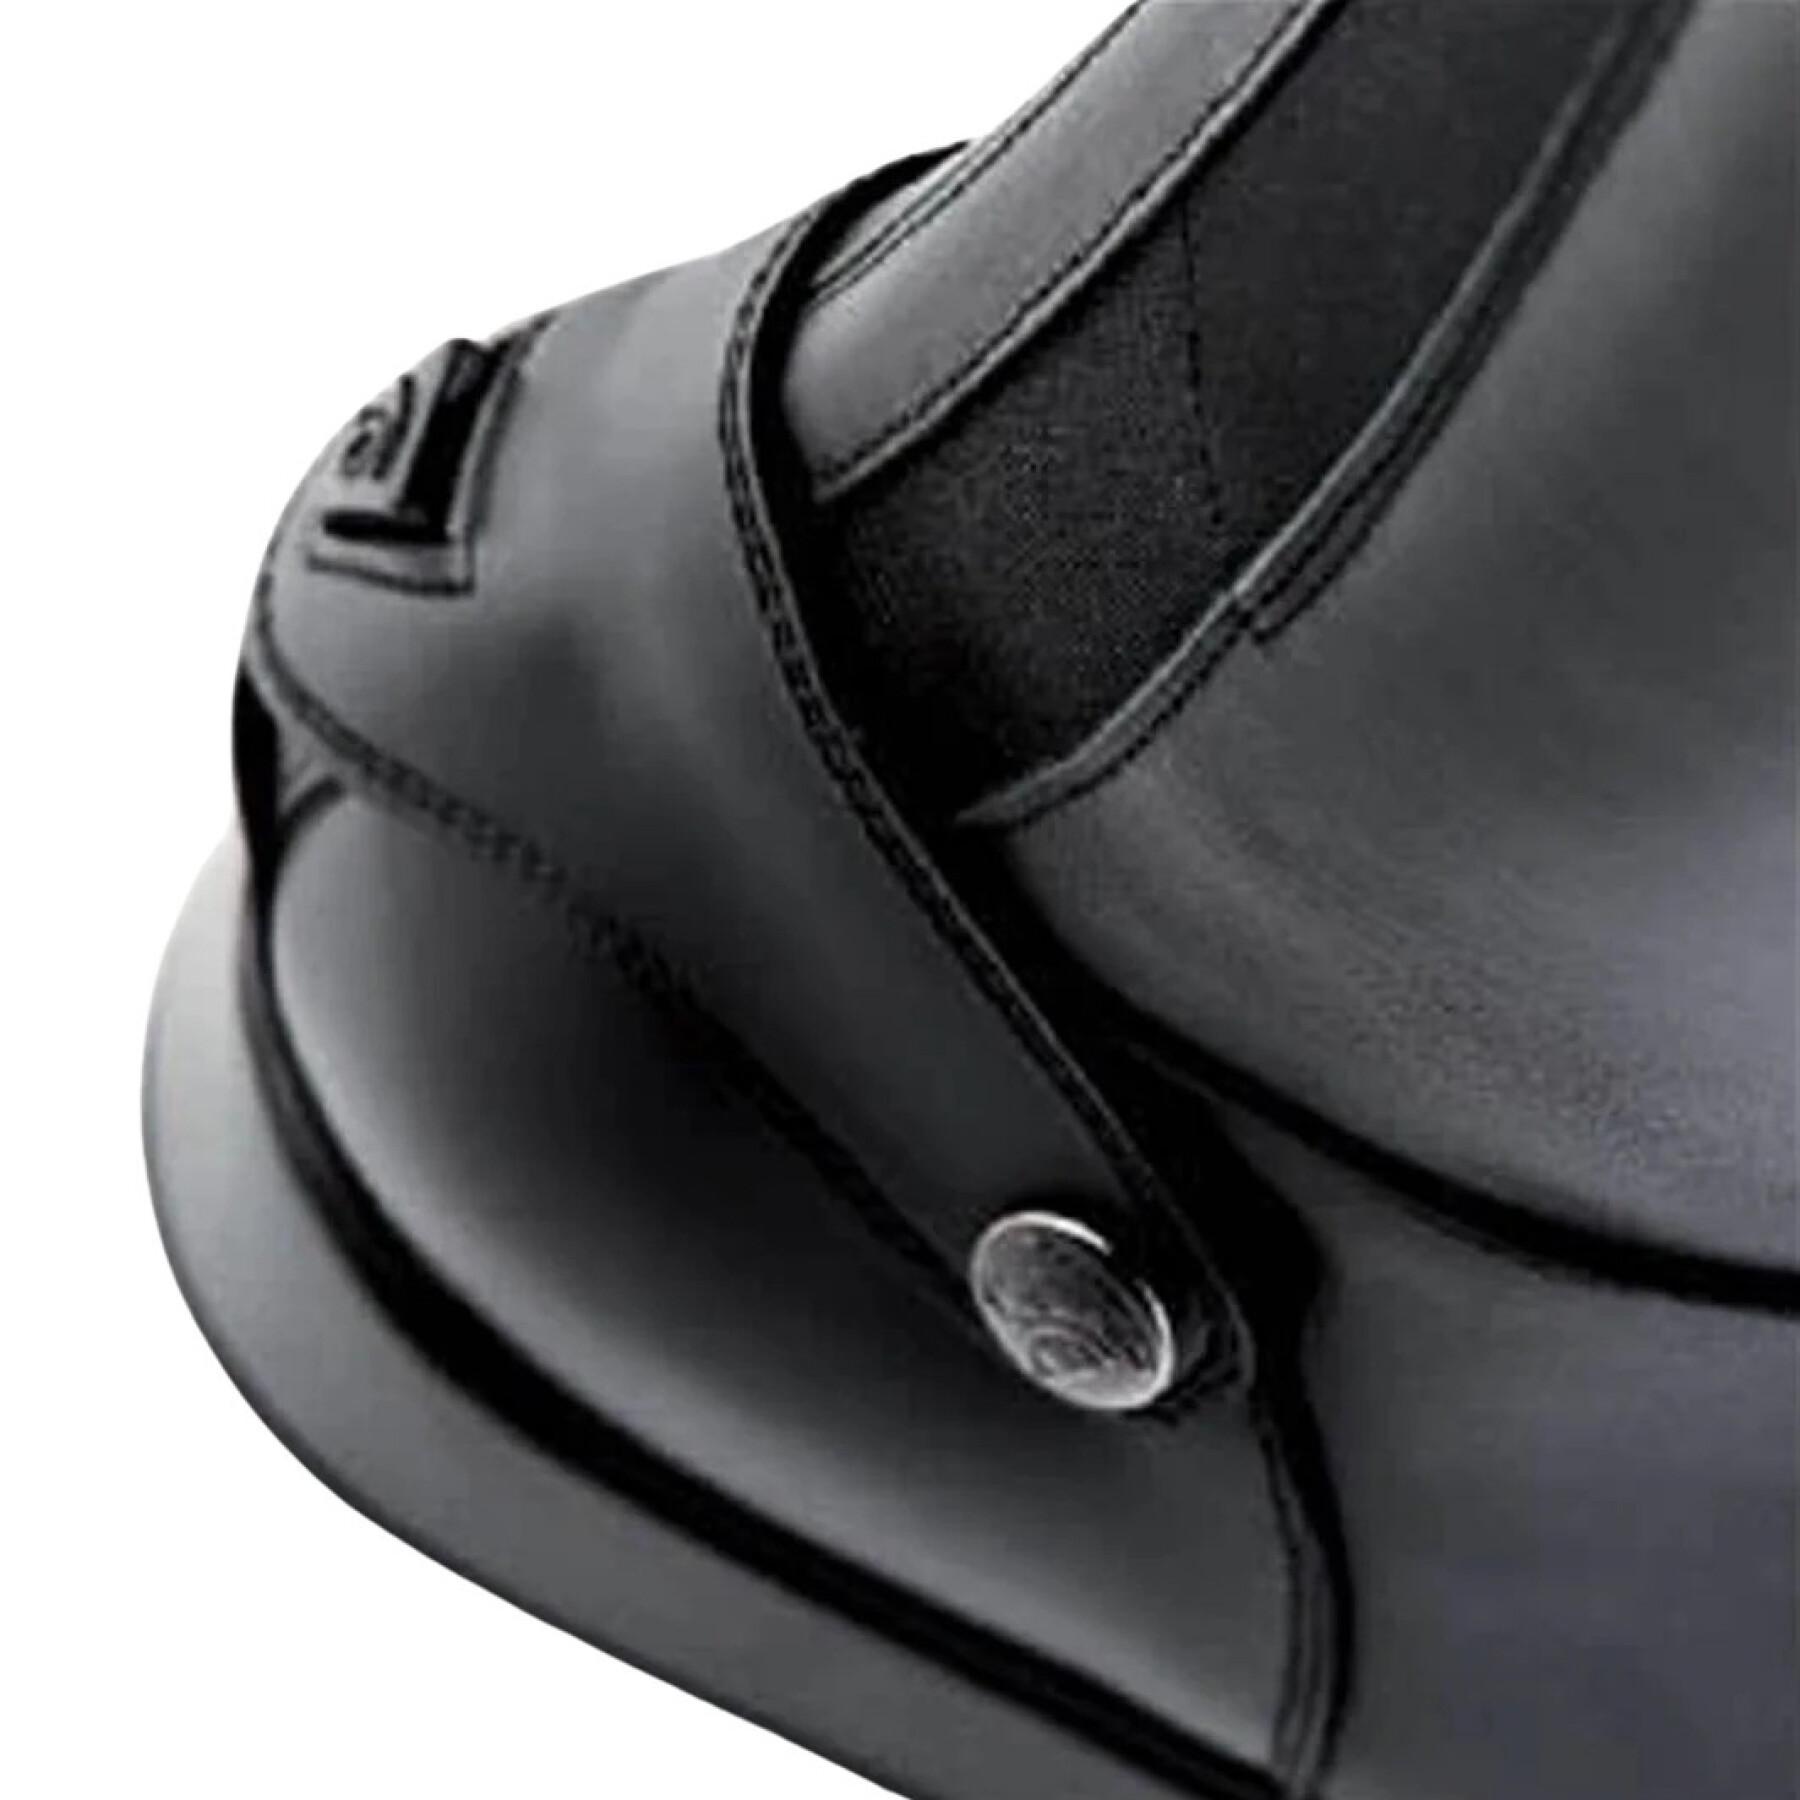 Stivali da equitazione misura regolare x- media l Sergio Grasso Evolution